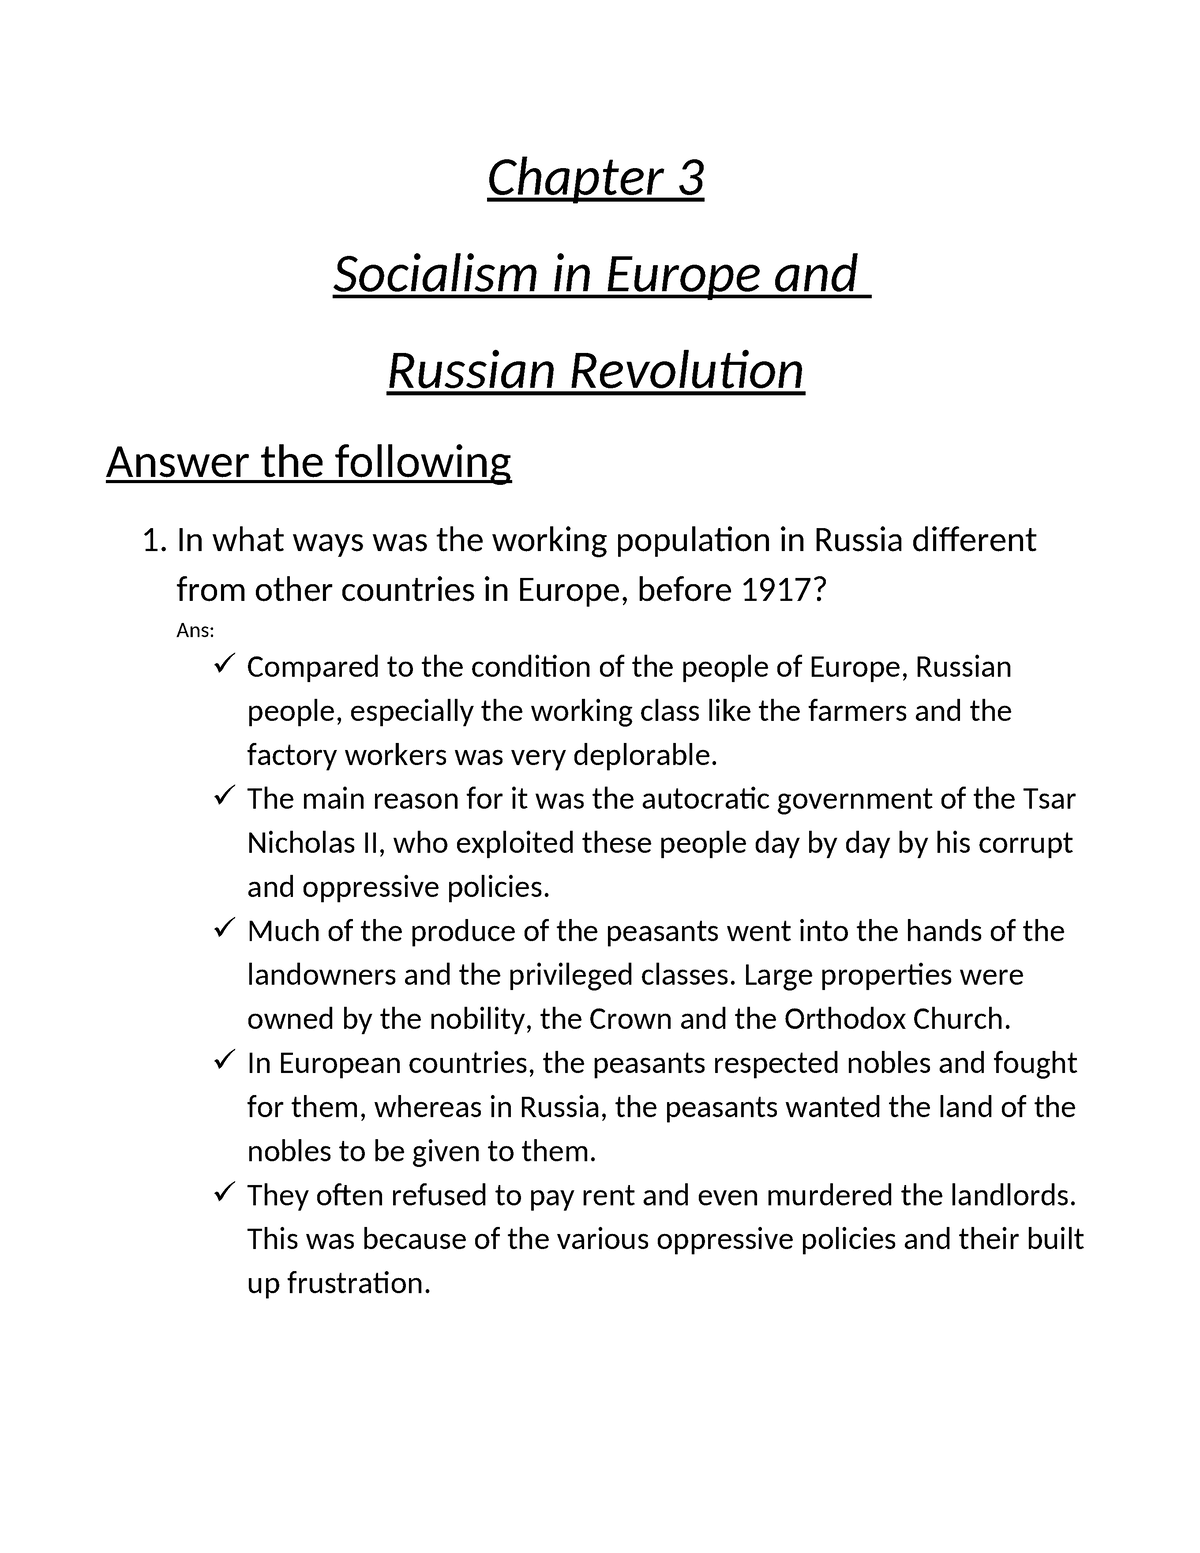 essay on russian revolution